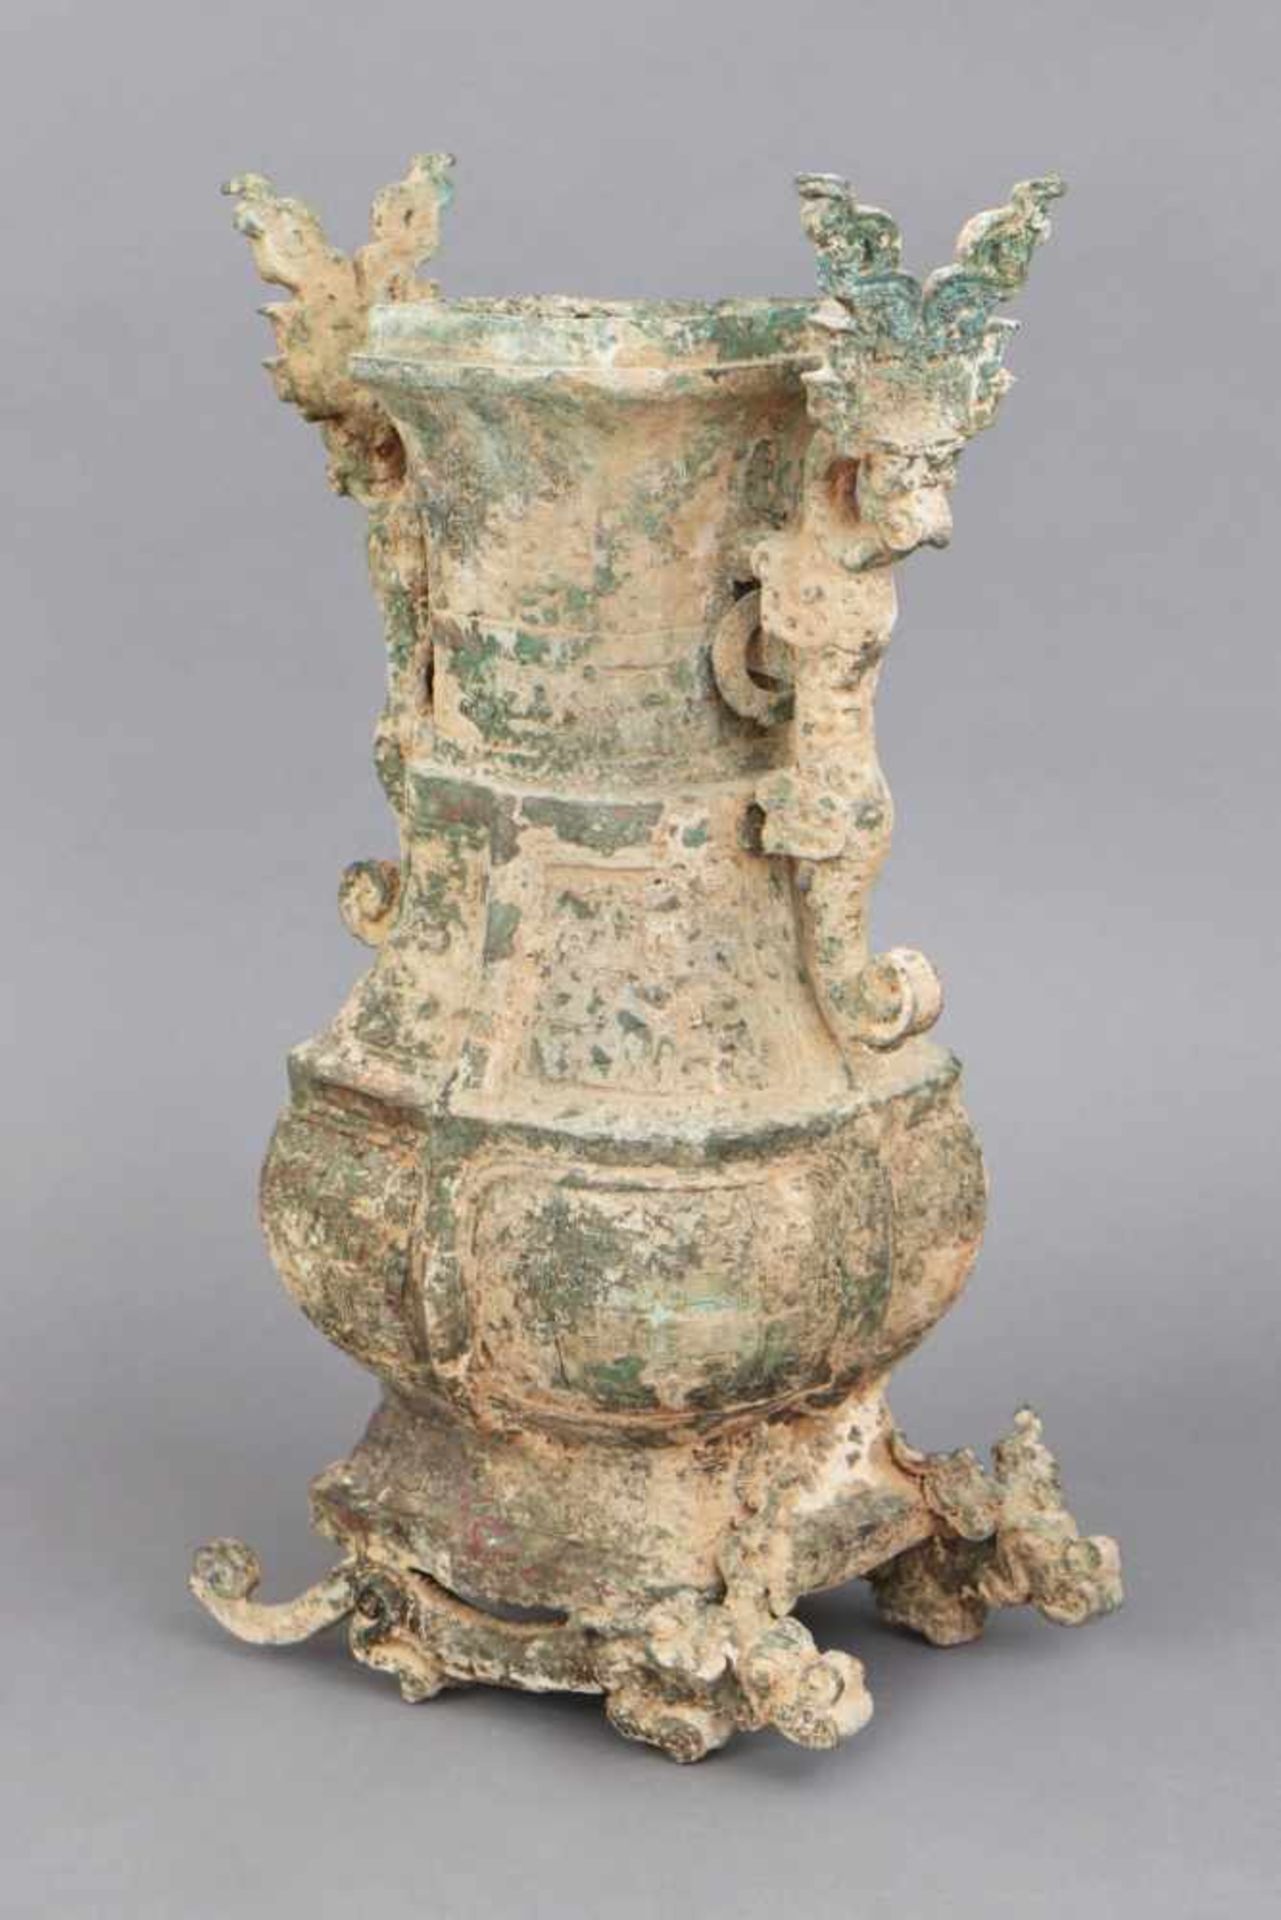 Großes chinesisches Bronze-Ritualgefäß/Weinkanne im Stile der Shang-Dynastiegrün patiniert, Alter